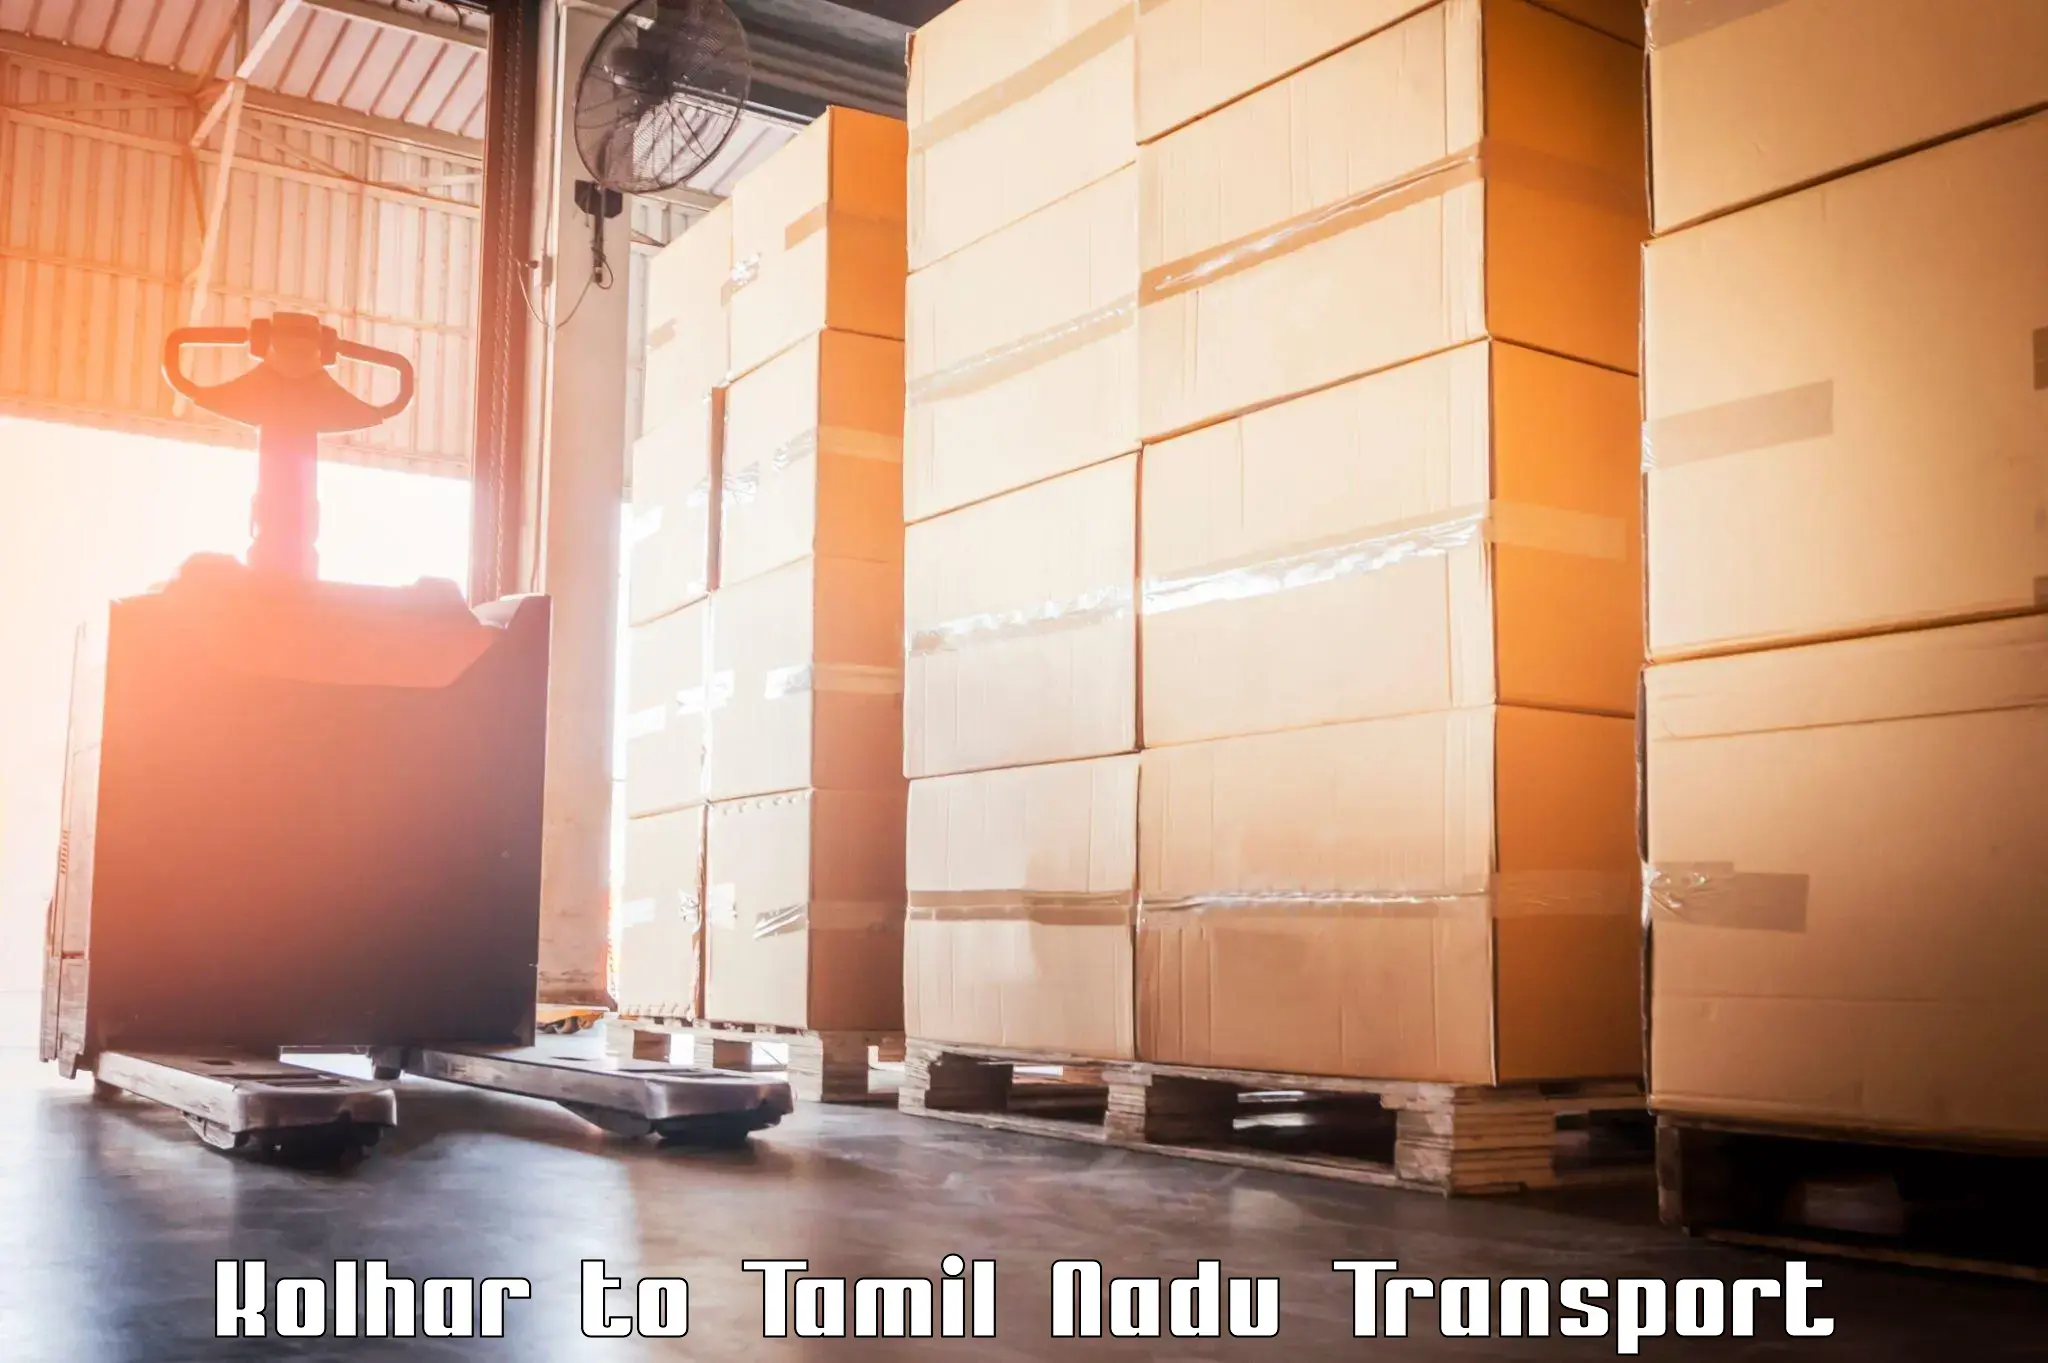 Transport shared services Kolhar to Ambur